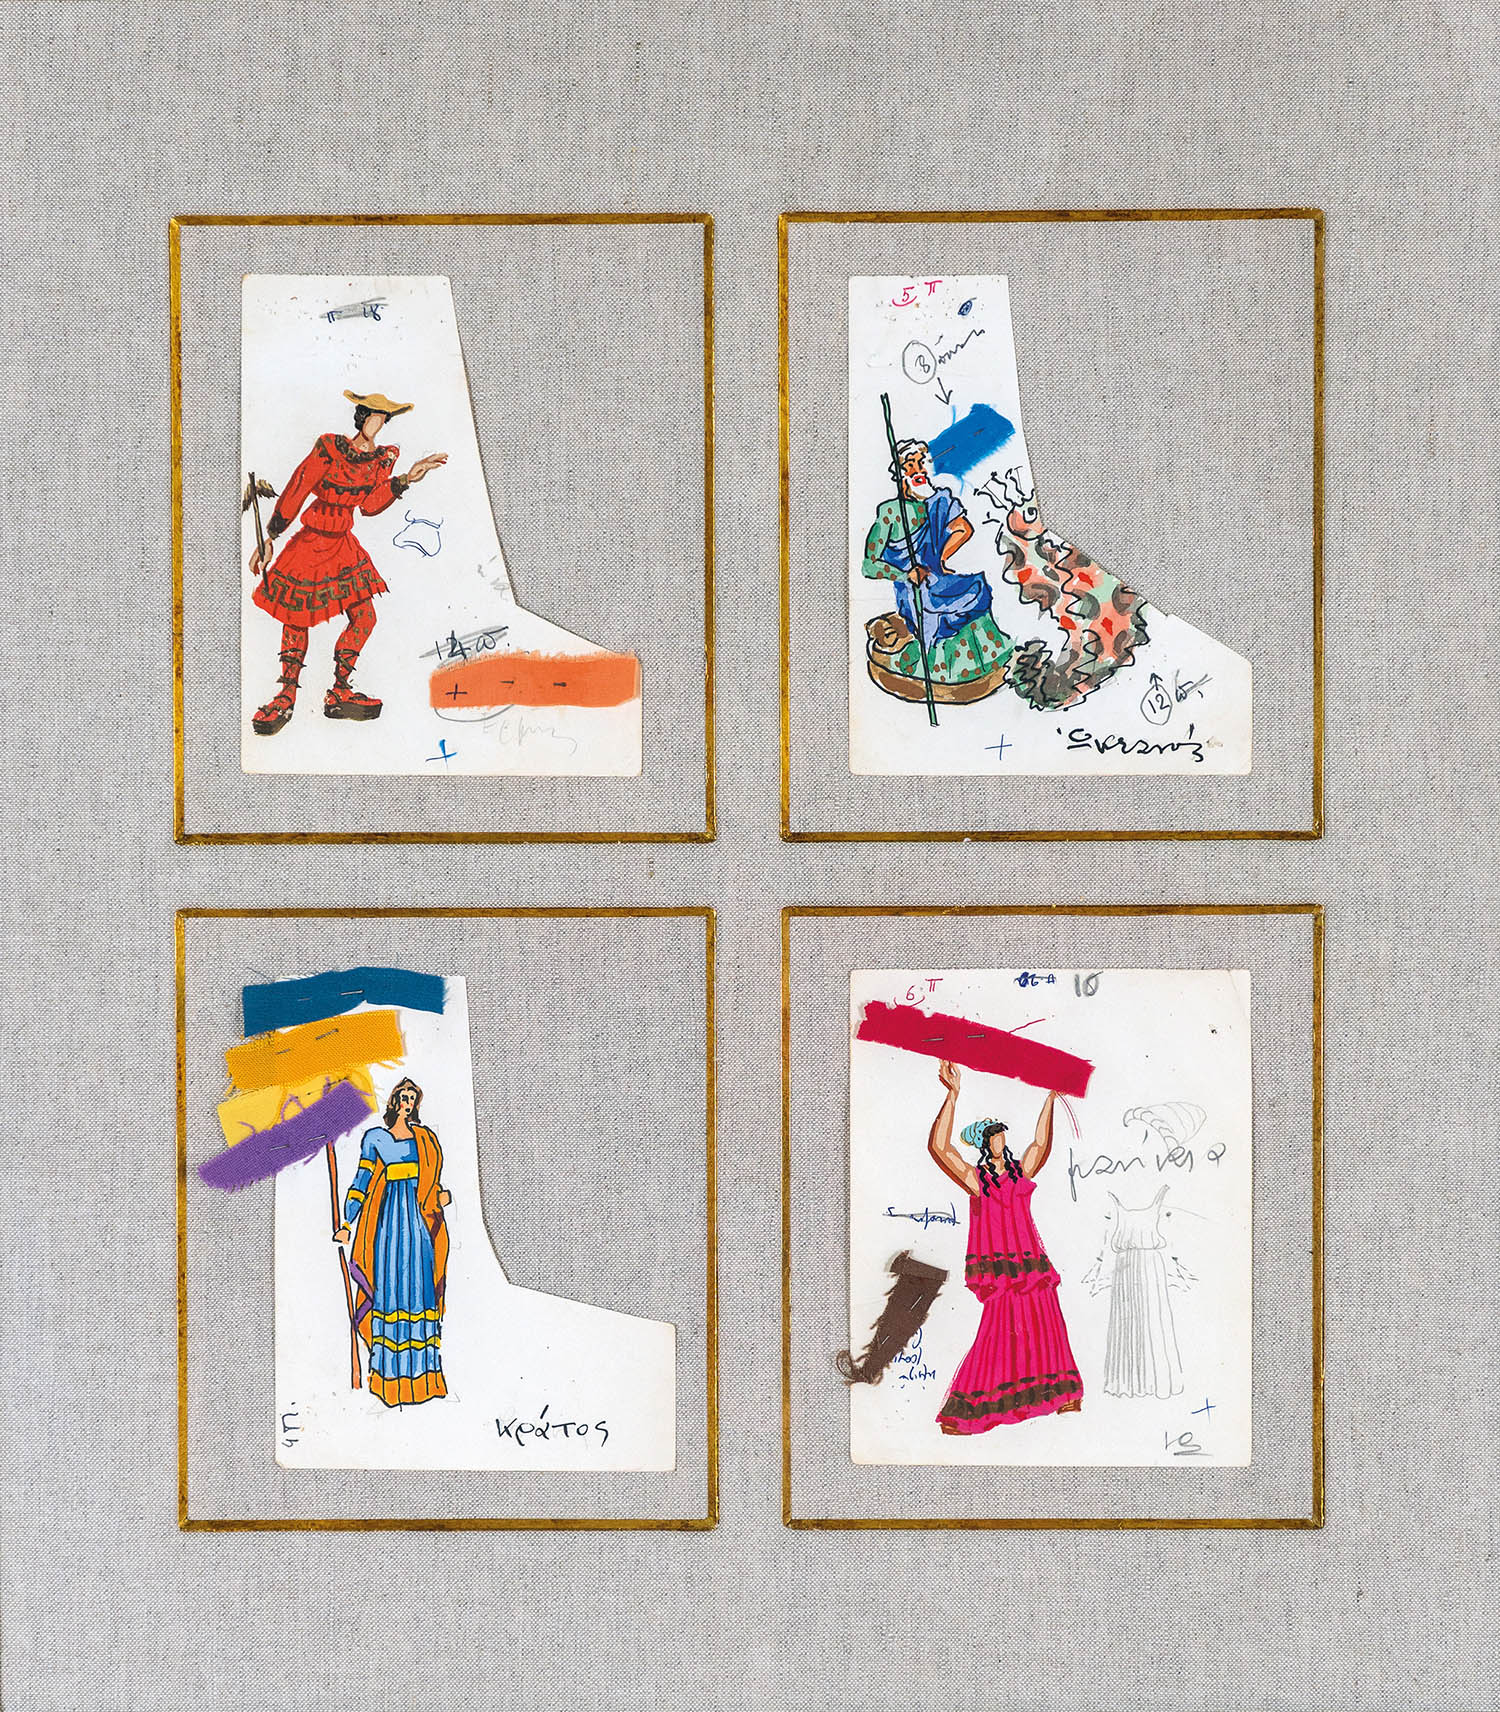 Μακέτες κοστουμιών για την παράσταση του Αισχύλου Προμηθέας Δεσμώτης (Θυμελικός Θίασος του Λίνου Καρζή, 1959)